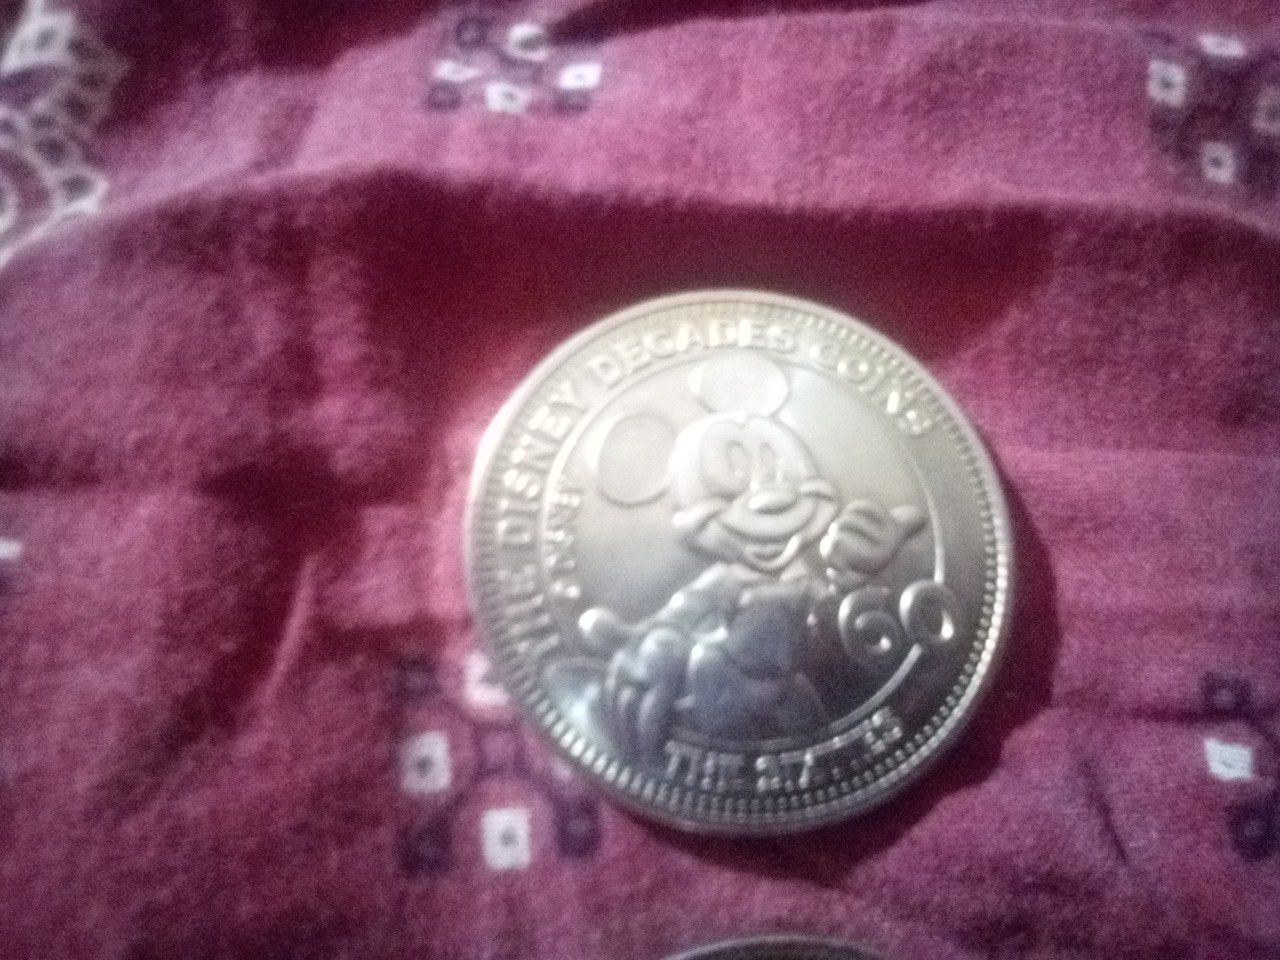 The Disney decades coins collector's edition